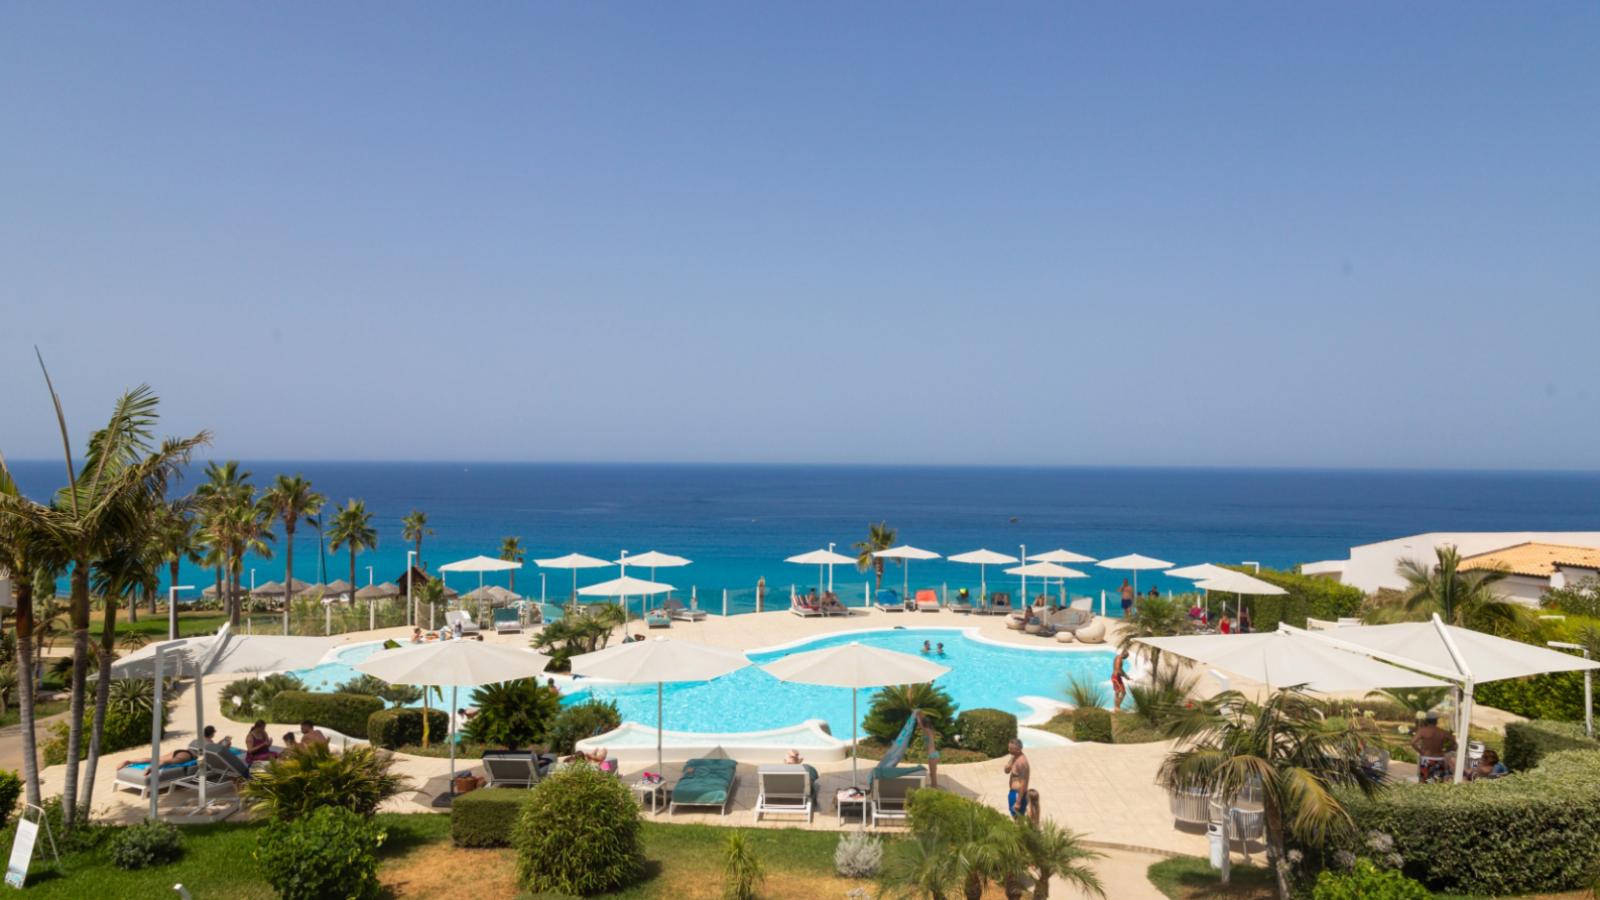 Resort con piscina e vista mare, palme e ombrelloni bianchi.